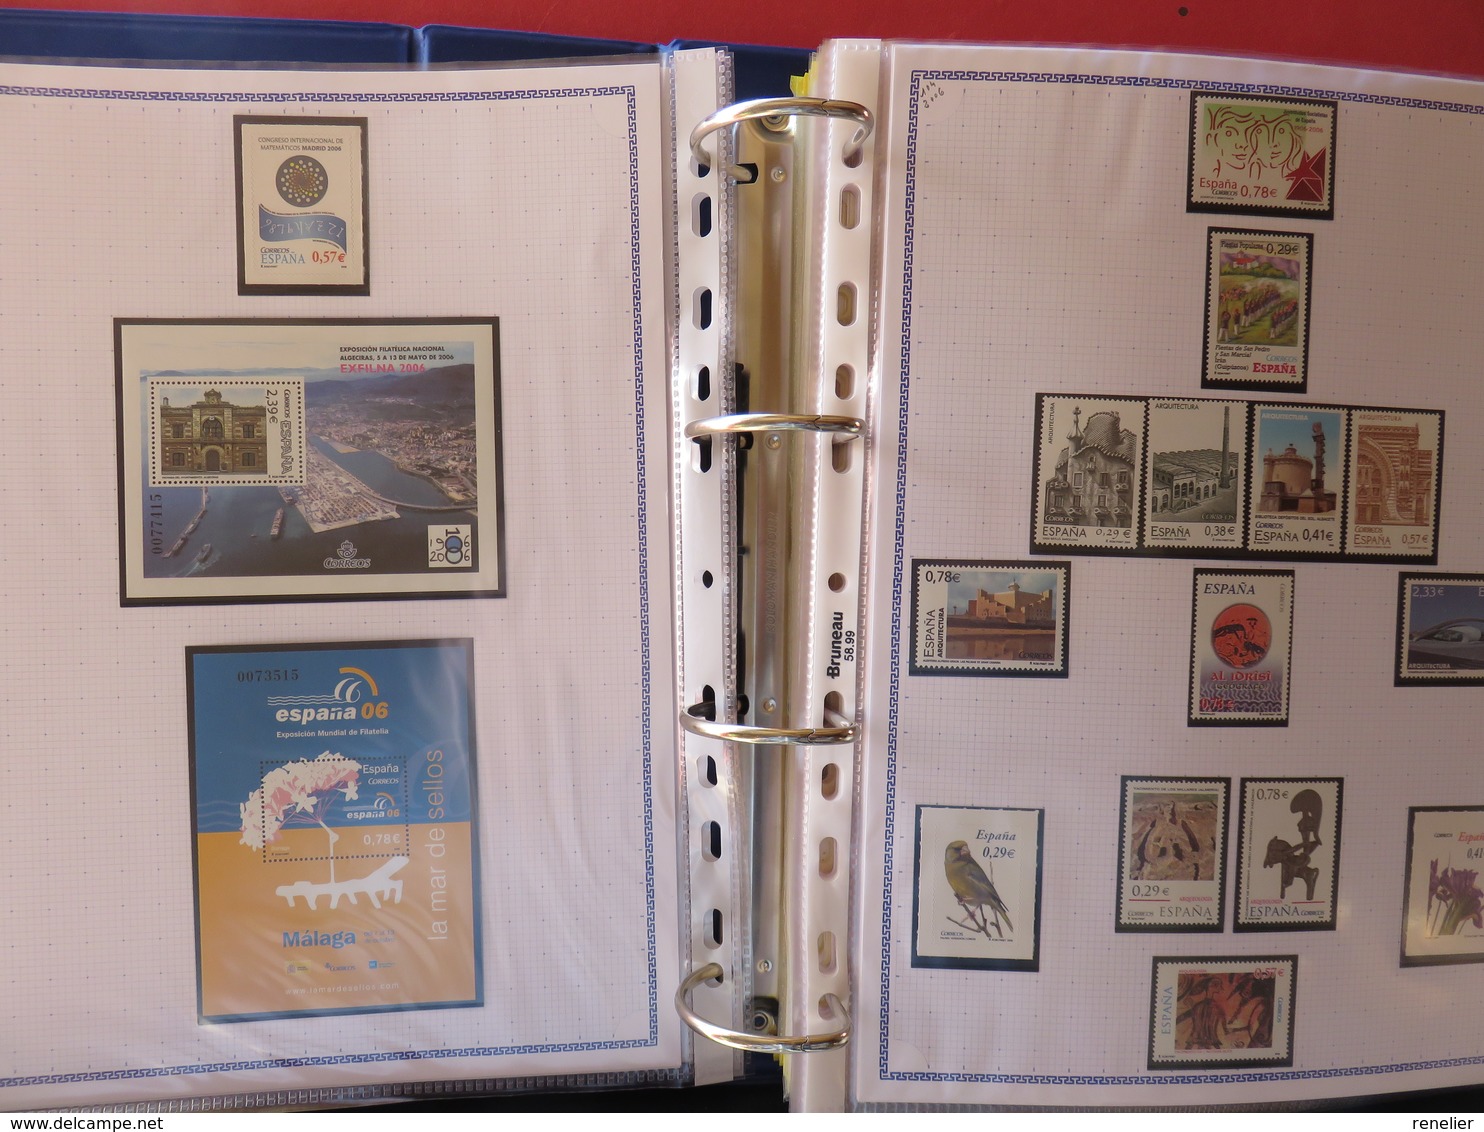 ESPAGNE - Belle collection des années 1979 à 1996 et 2006 à 2008 (partielles) - TP** et BF**, distributeurs, carnets